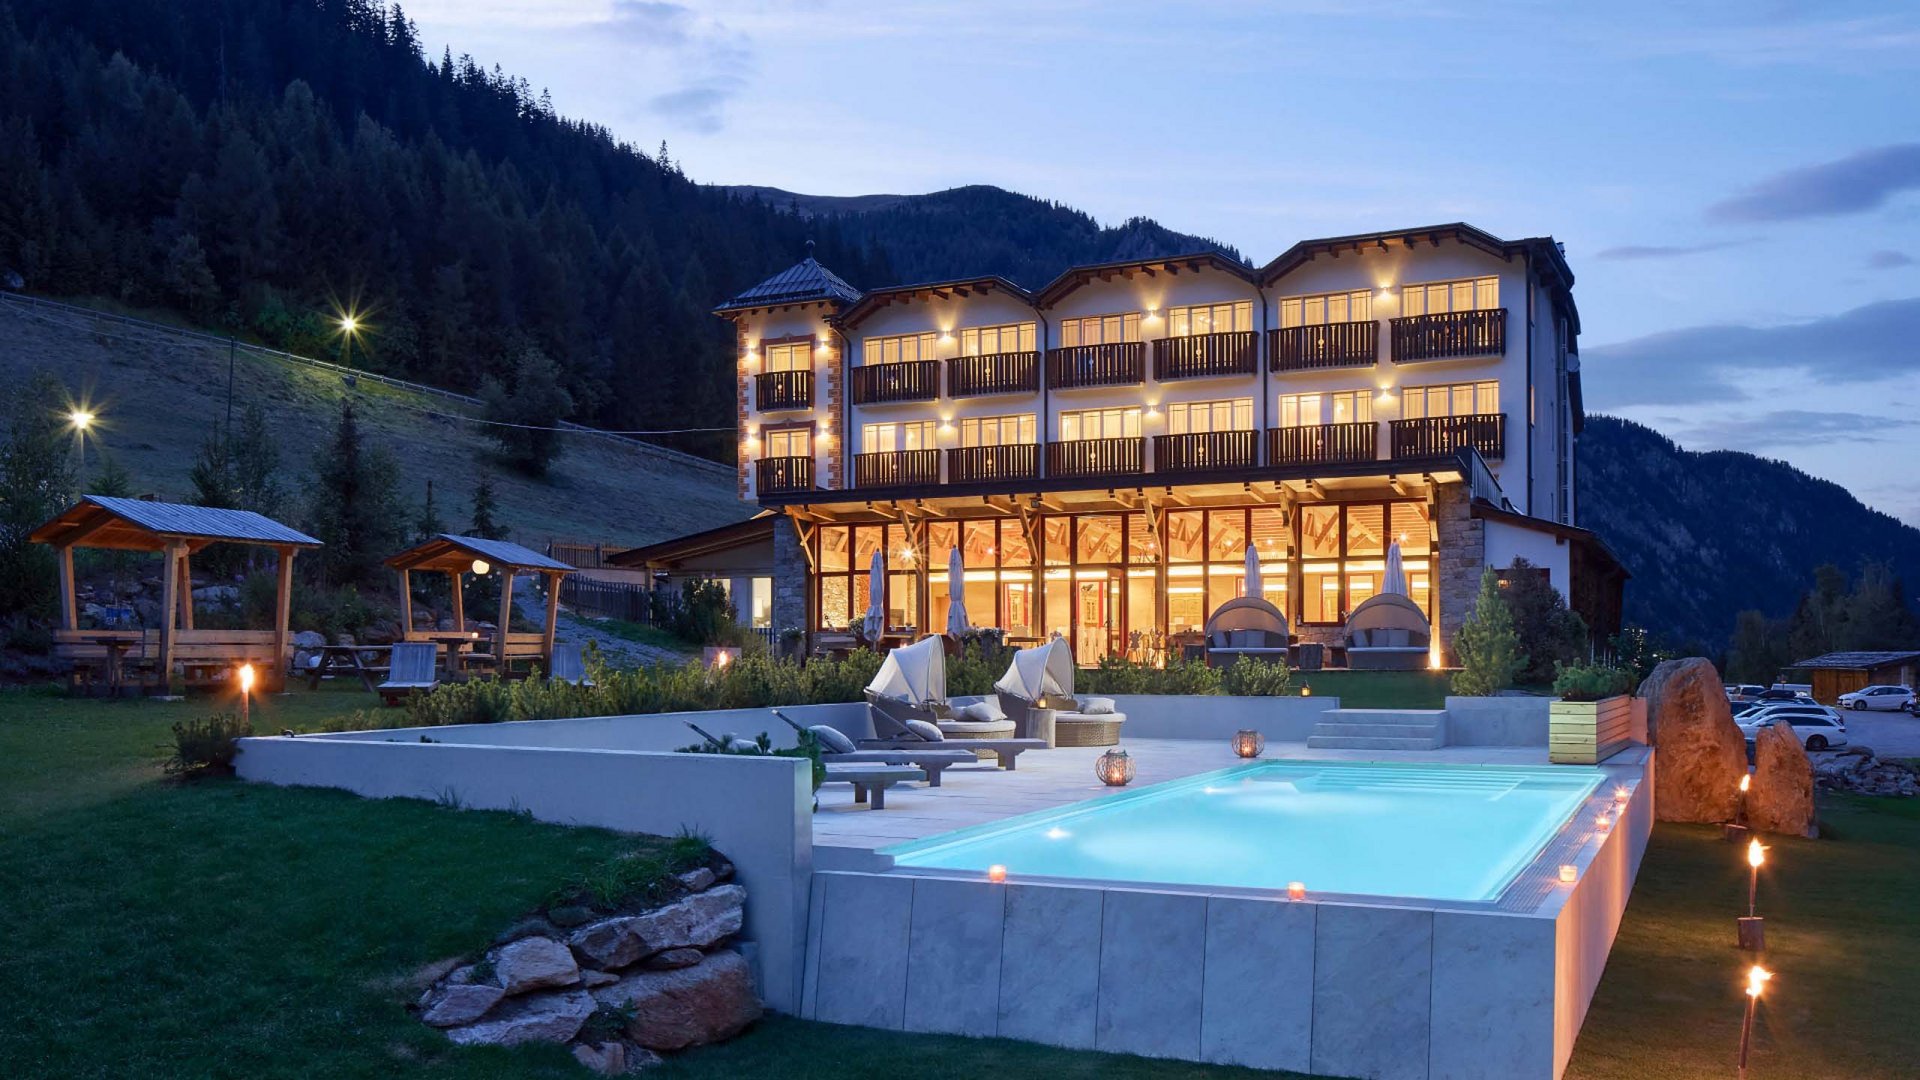 Vista serale dell'Hotel Bella Vista con una piscina all'aperto illuminata in primo piano, circondata dal pittoresco paesaggio montano dell'Alto Adige, creando un'atmosfera tranquilla e rilassante.